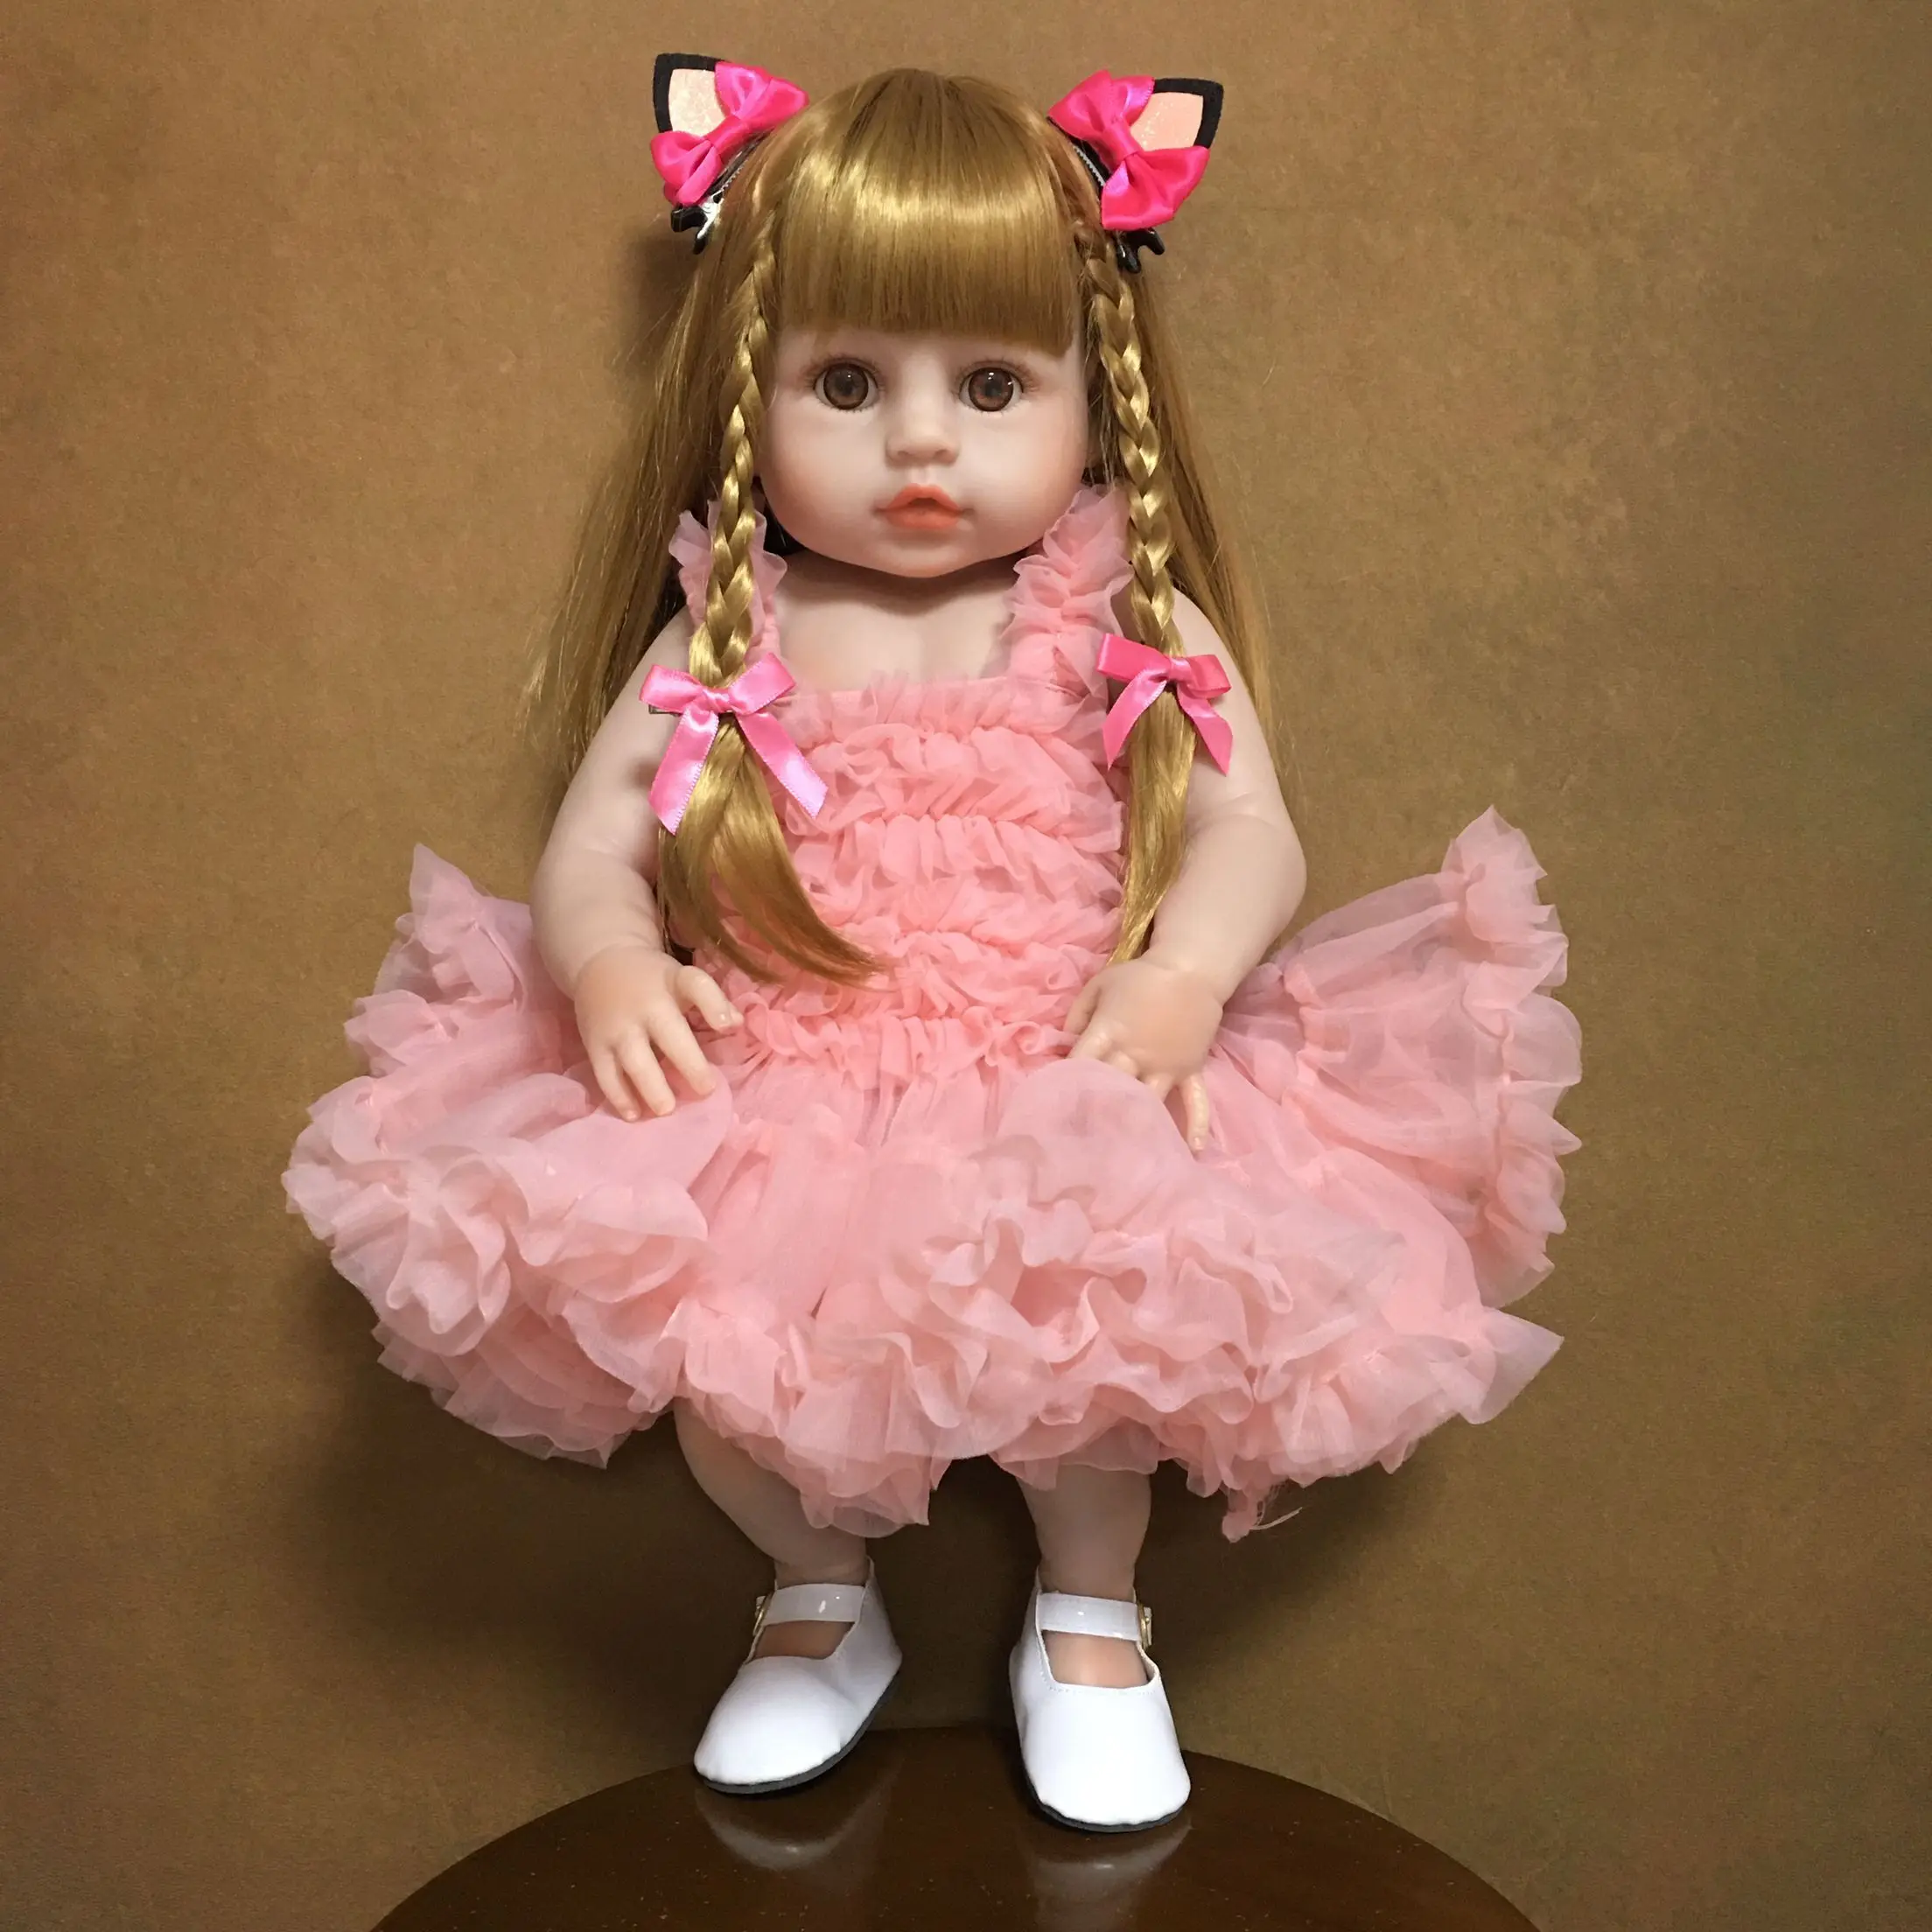 KEIUMI Косплей Принцесса Полный Силикон Винил Reborn Baby Girl Куклы Длинные Волосы Baby Reborn Boneca 19 дюймов Подарки на день рождения Детские игрушки